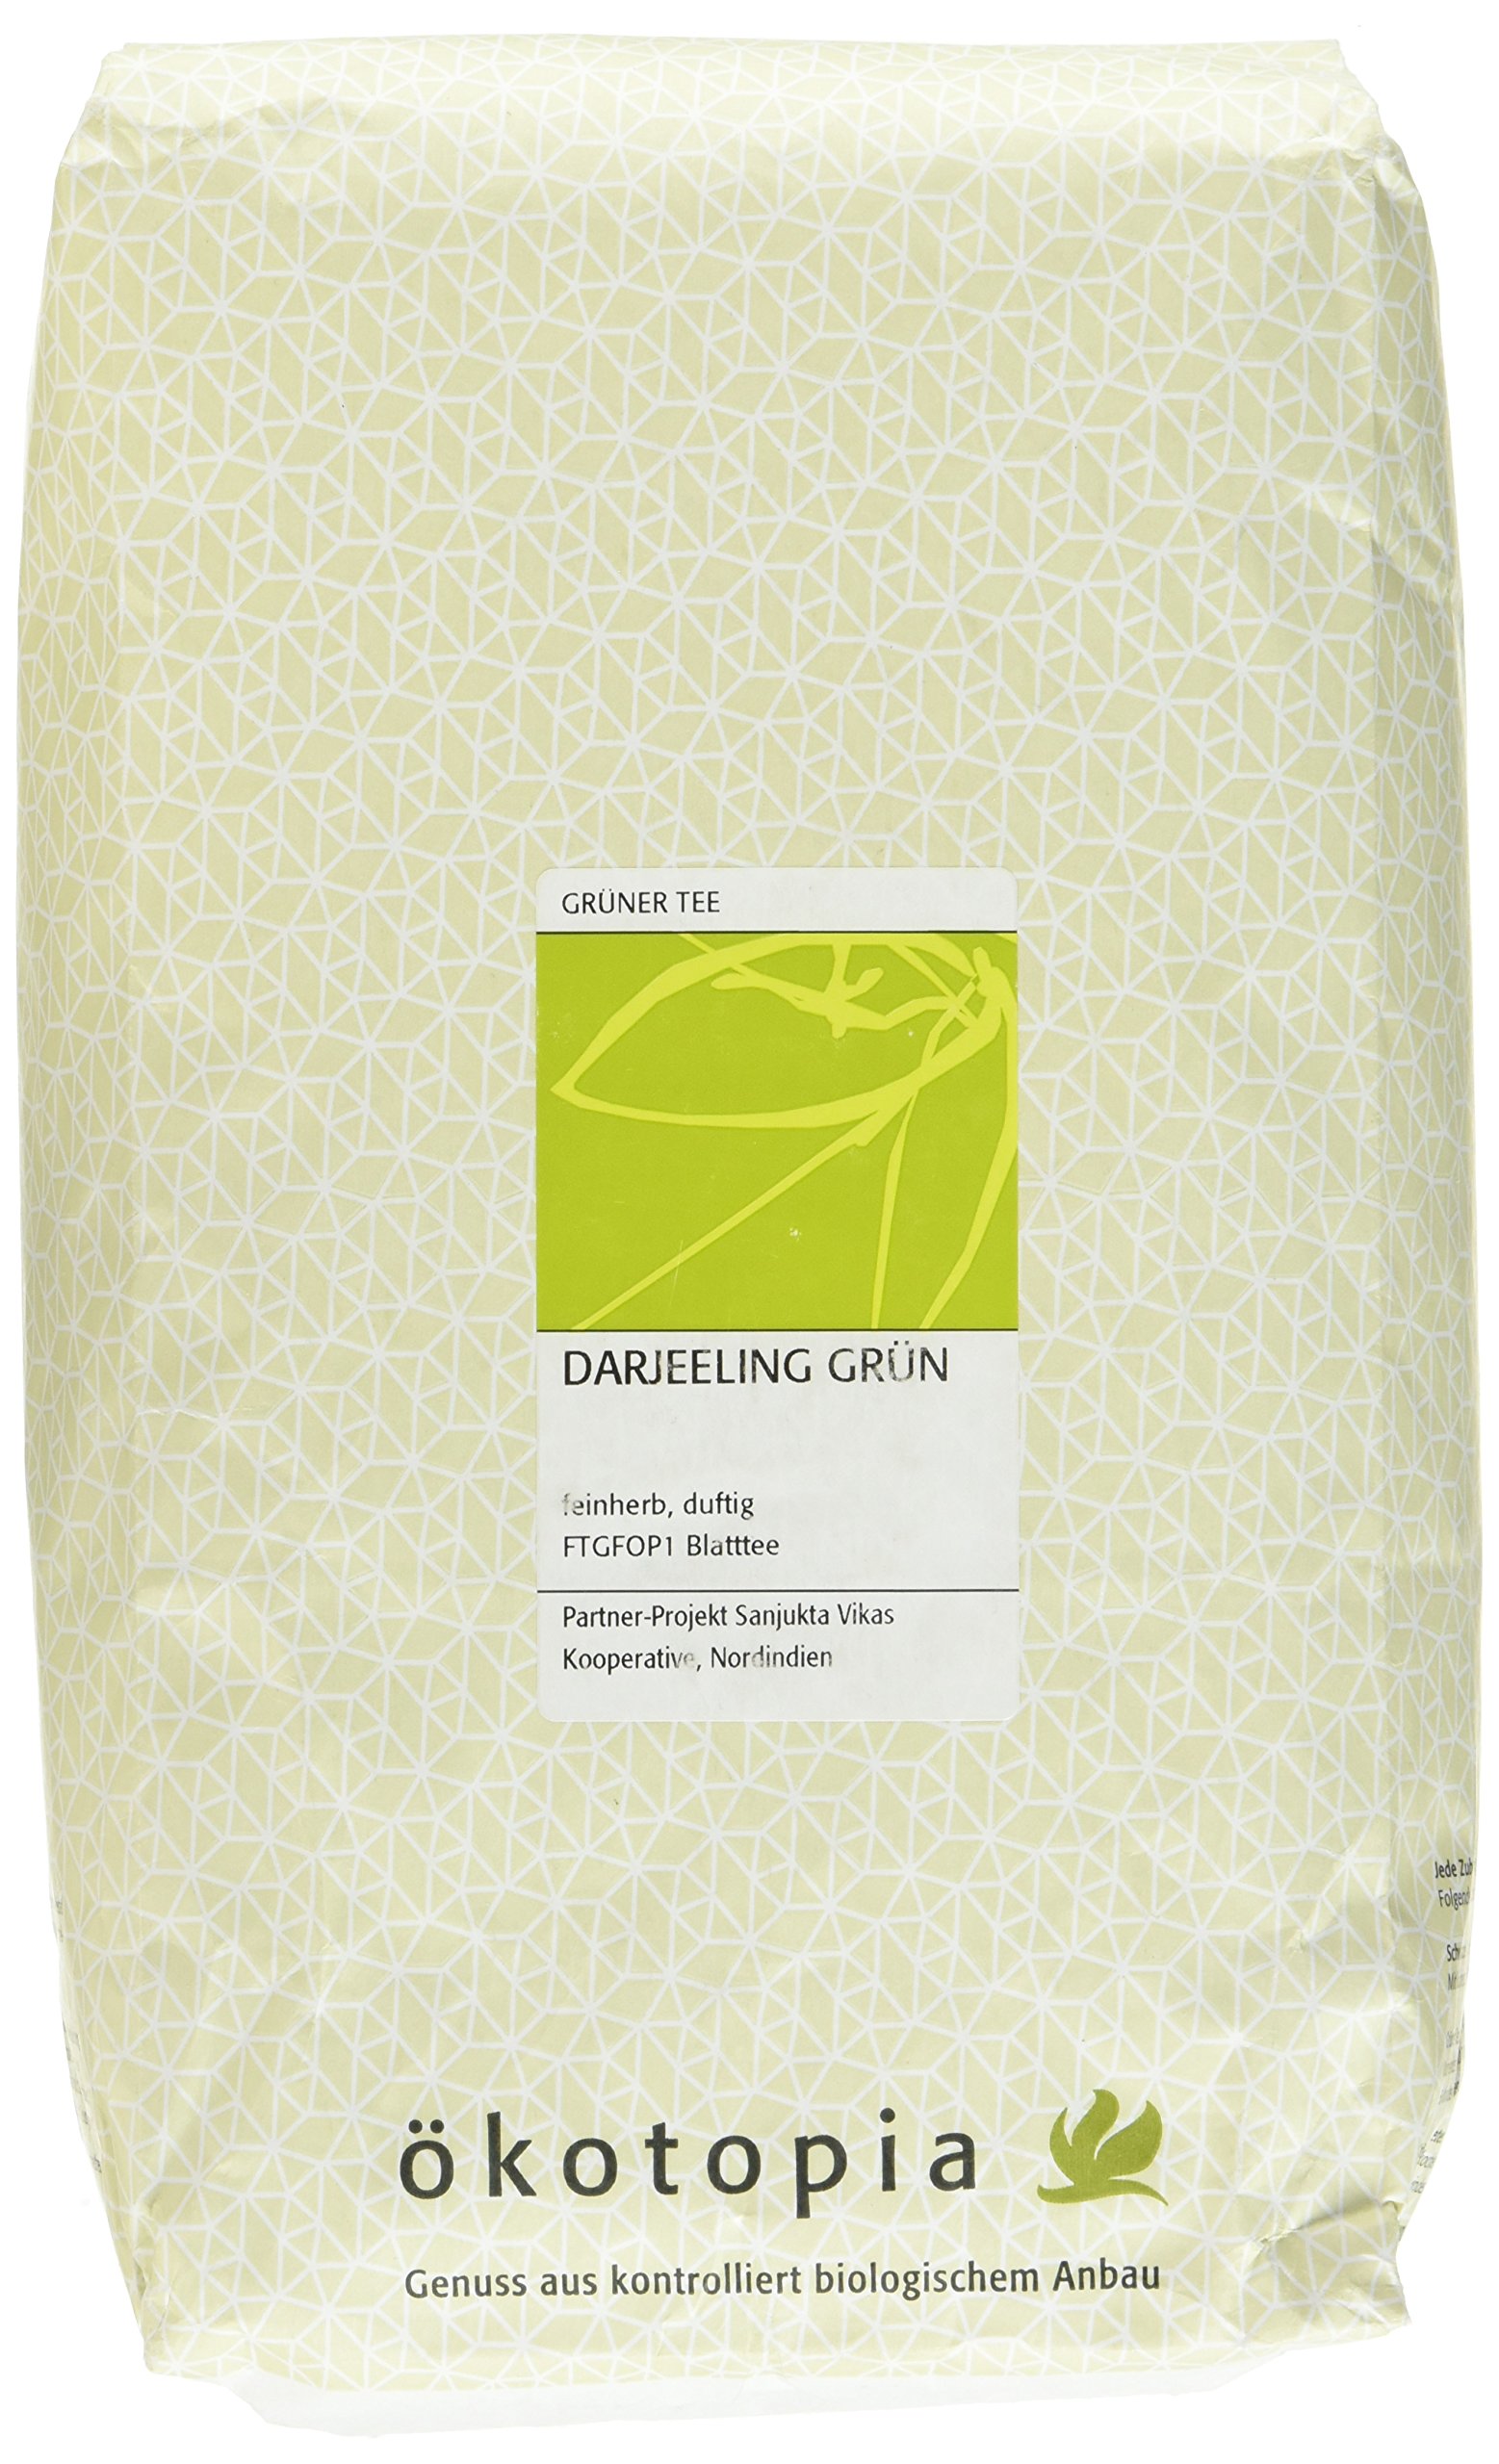 Ökotopia Grüner Tee Darjeeling Grün, 1er Pack (1 x 1000 g)